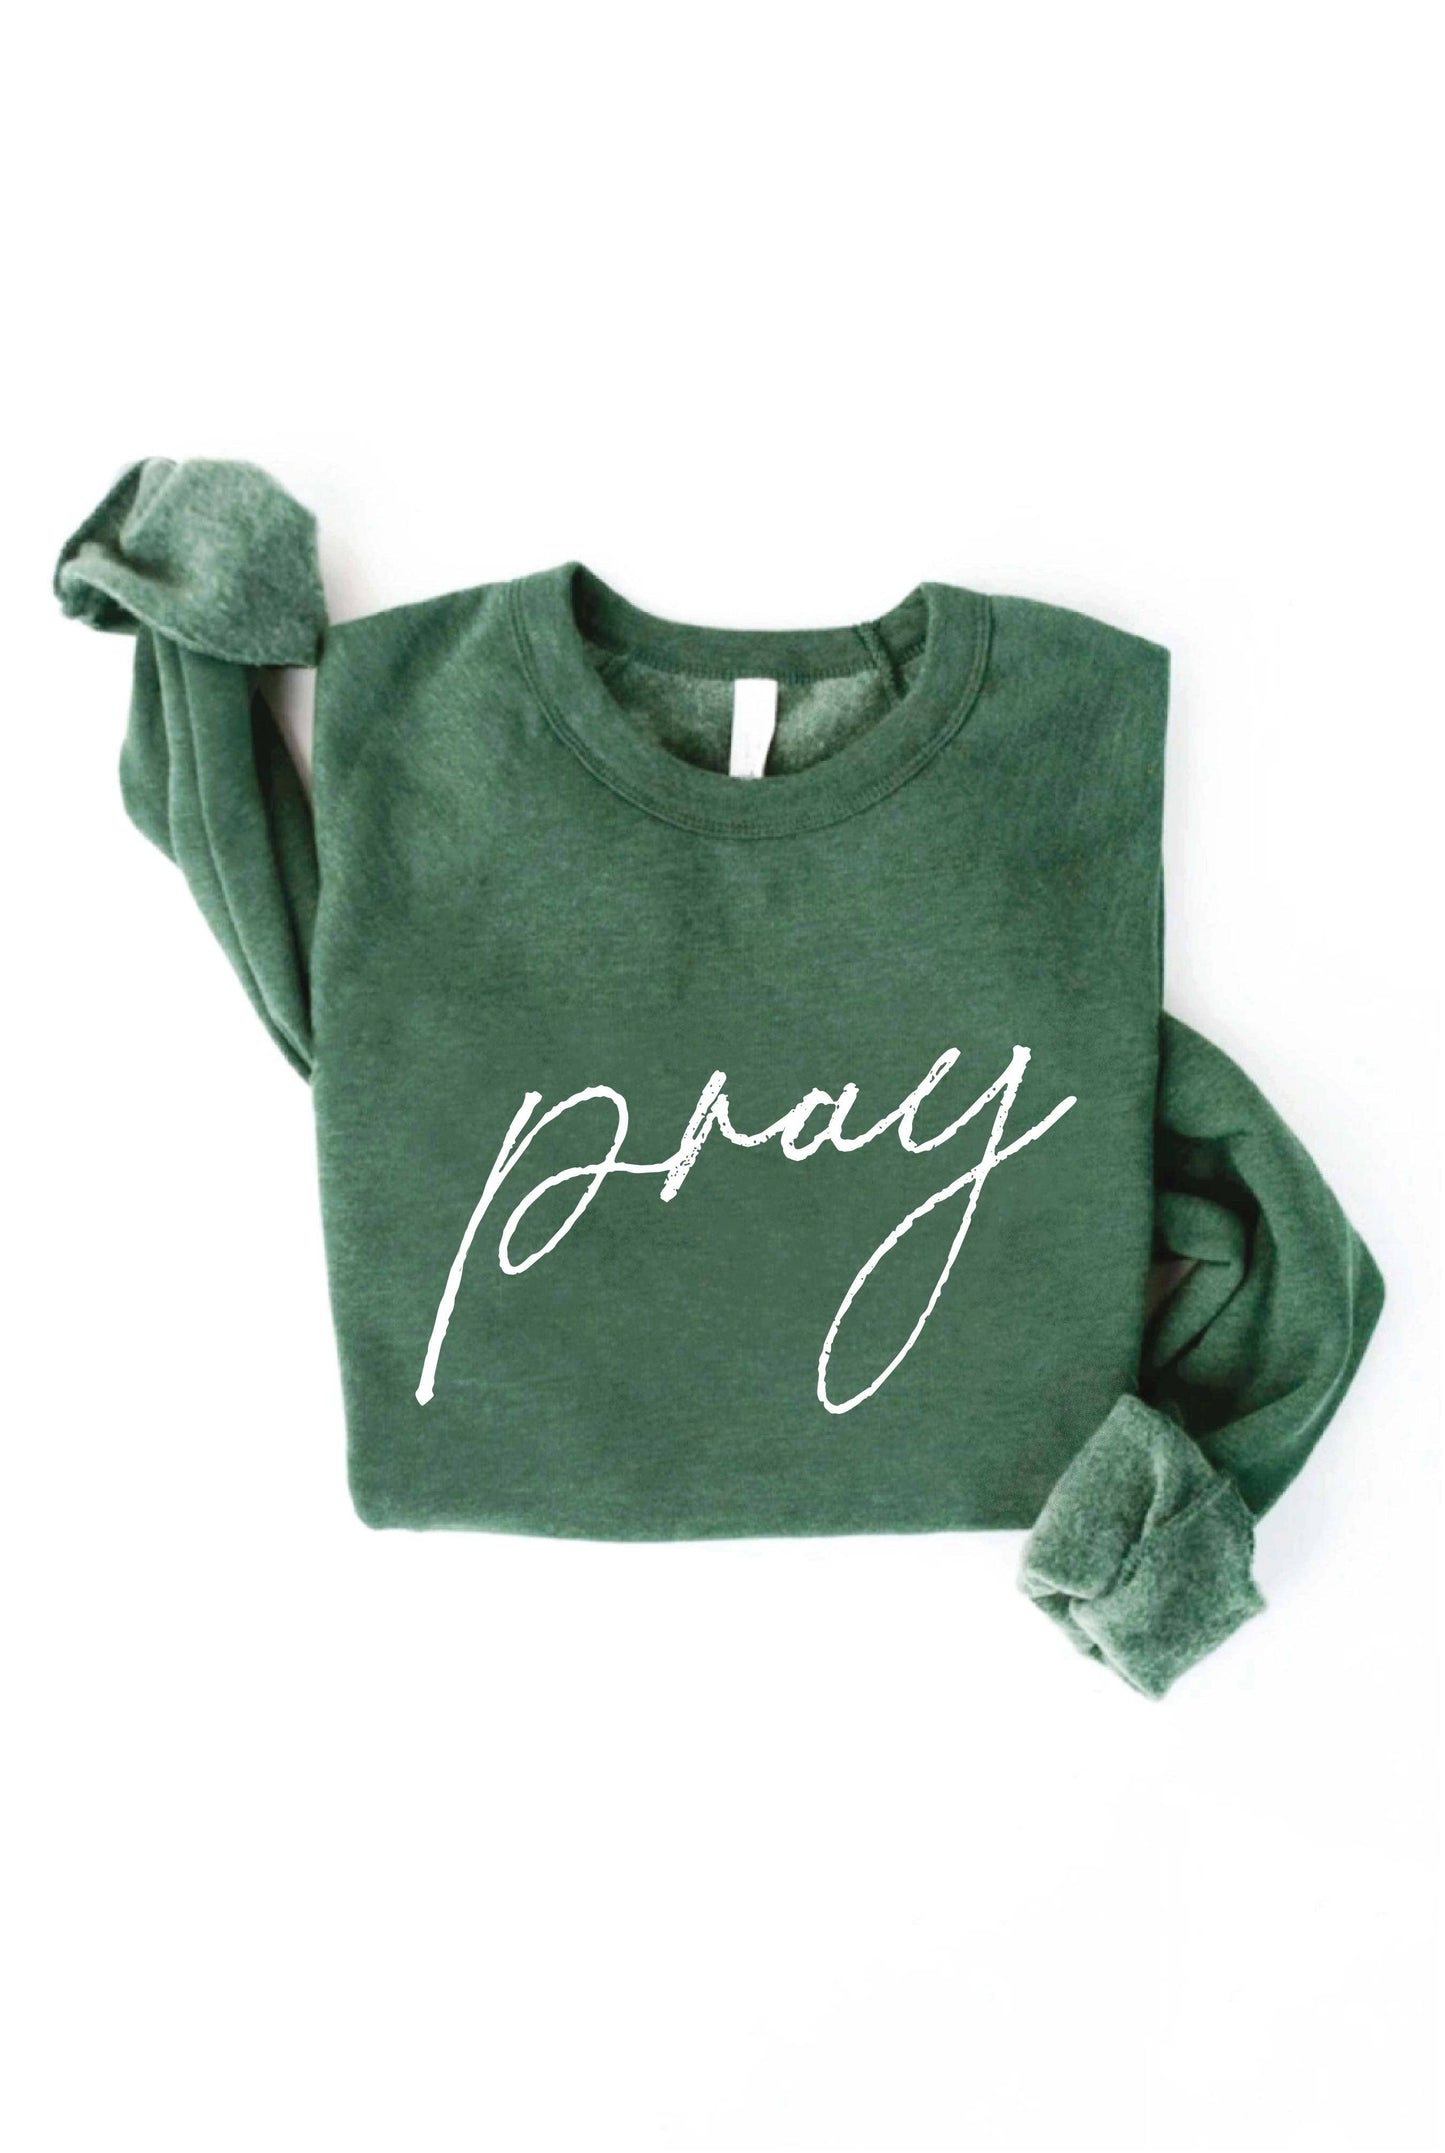 Pray Sweatshirt | Heather Forest